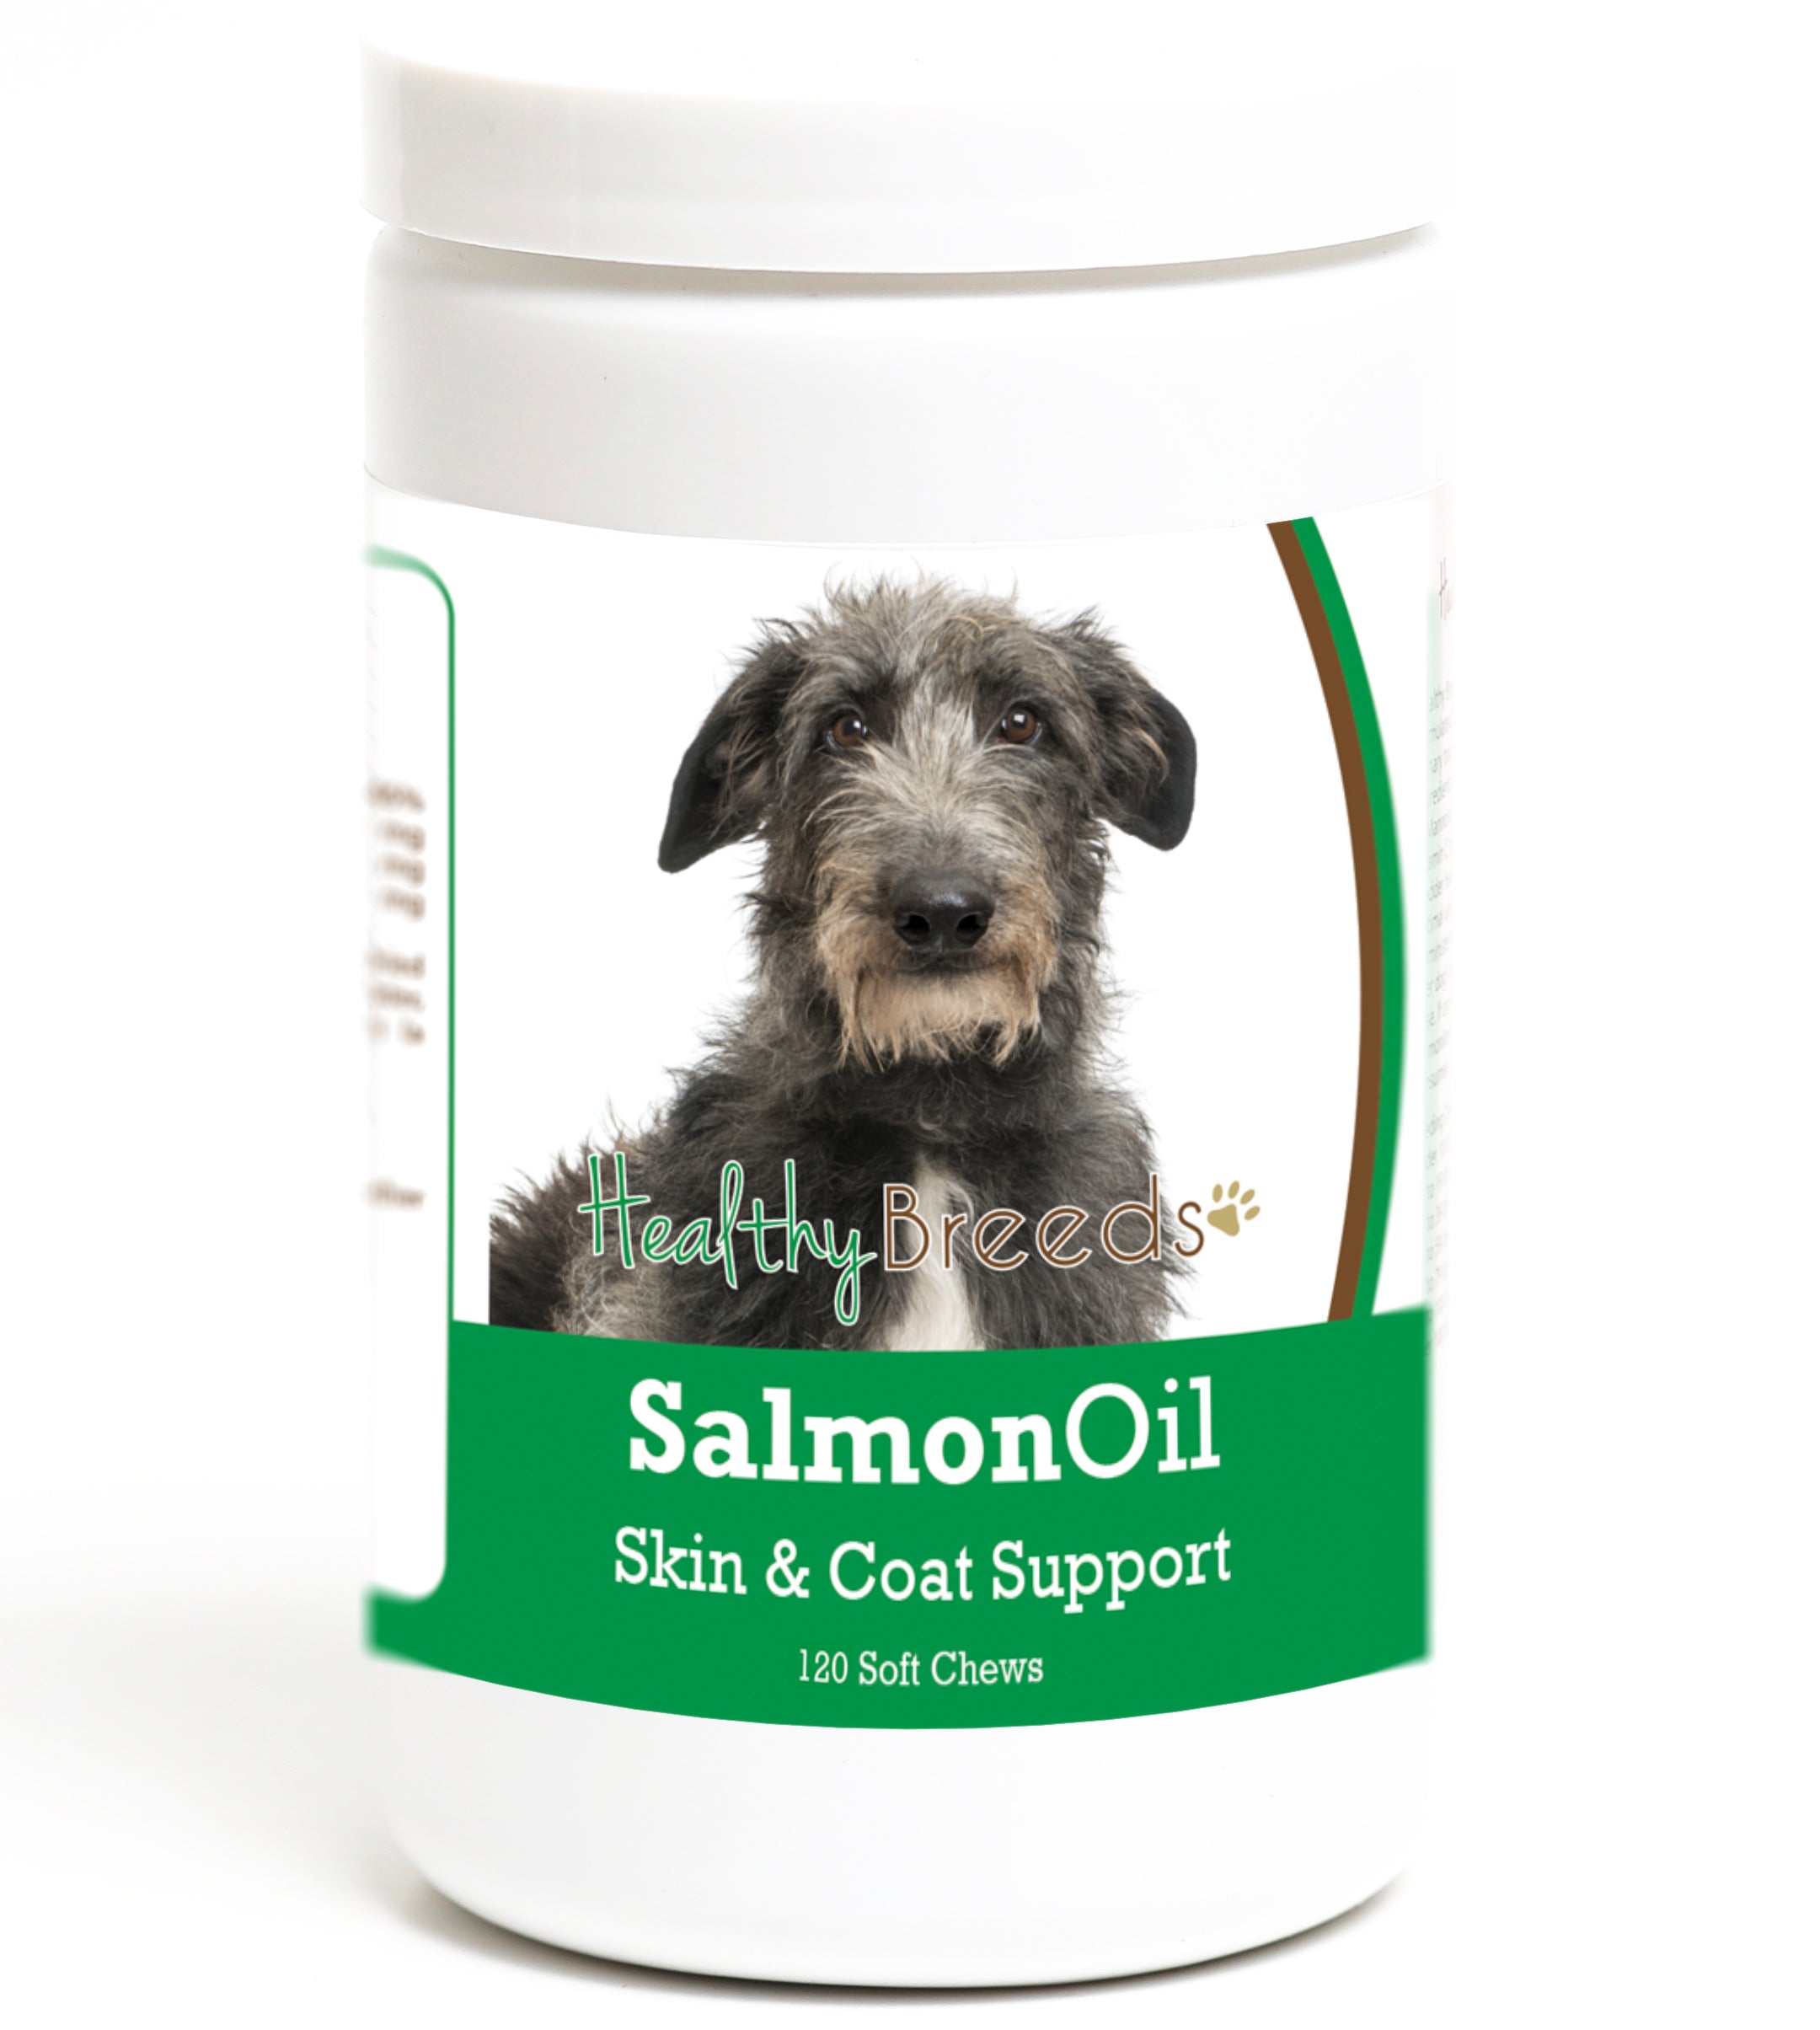 Scottish Deerhound Salmon Oil Soft Chews 120 Count